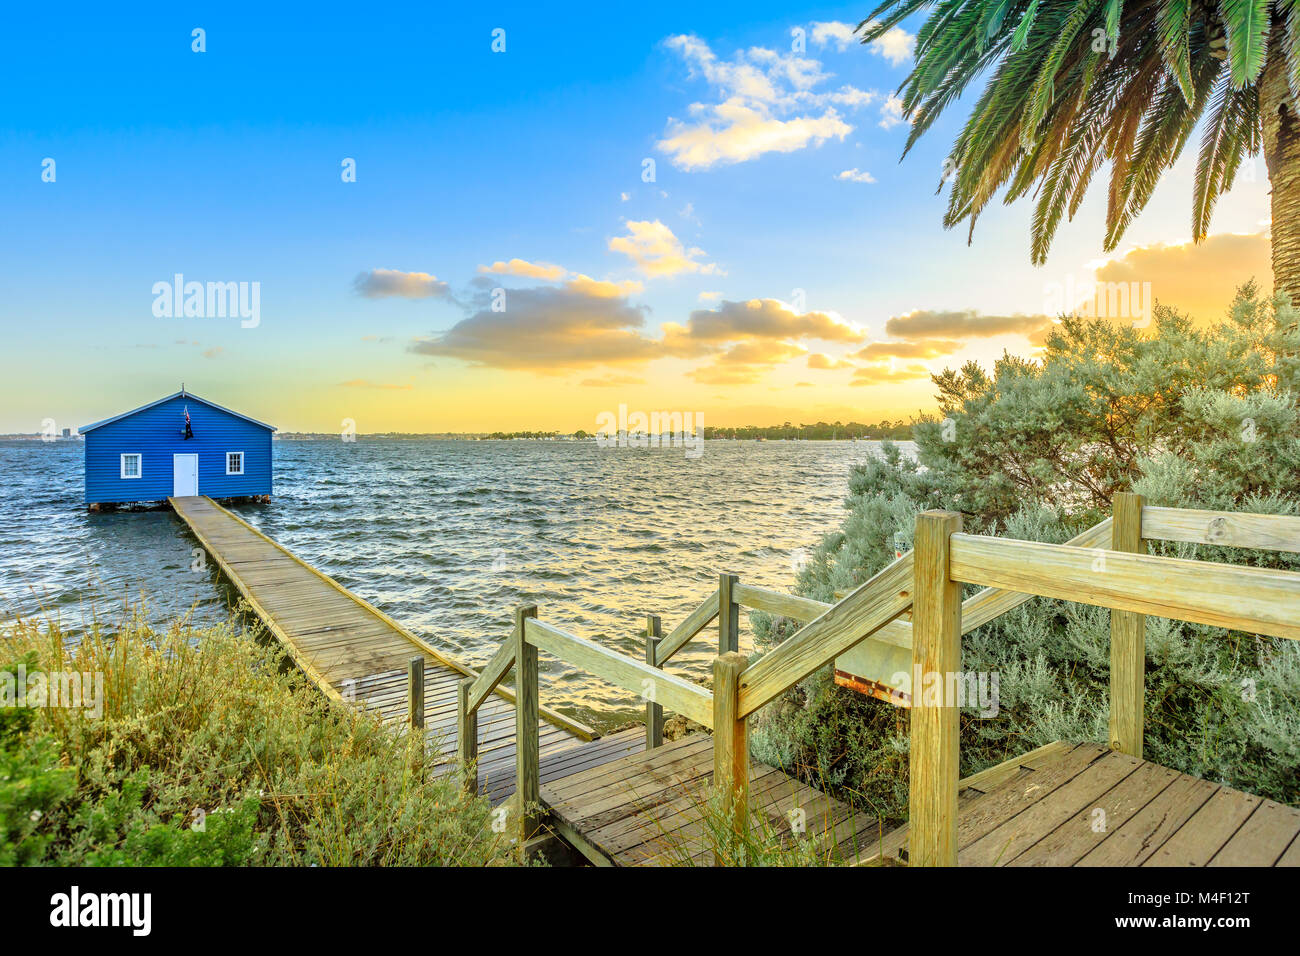 Le célèbre paysage de bleu bateau maison à partir de 1930 avec sol en bois jetée sur Swan River au coucher du soleil la lumière. L'un des endroits les plus photographiés à Perth, Australie occidentale, près de Kings Park. Banque D'Images